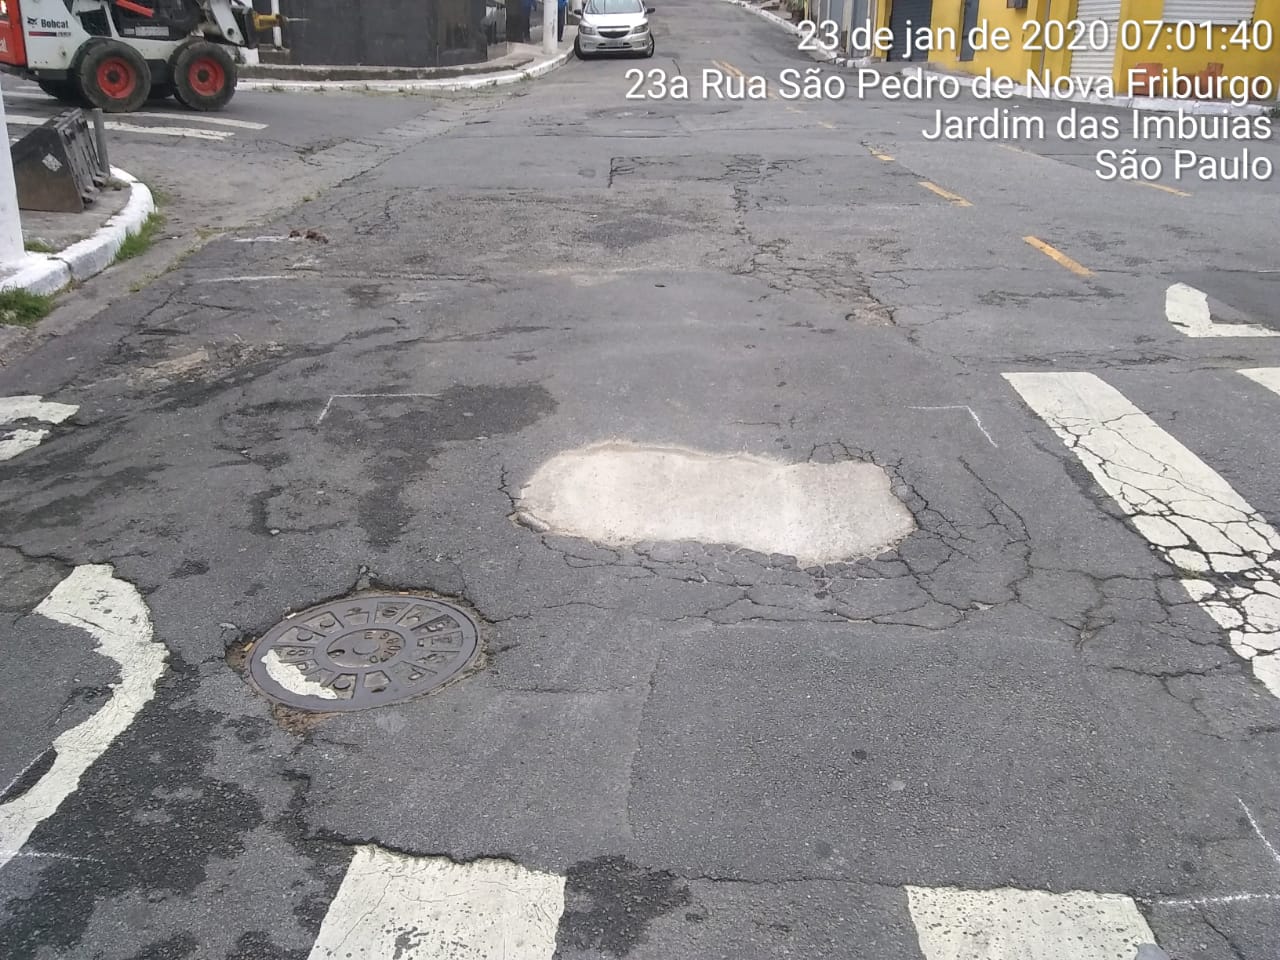 #PraCegoVer - Na primeira foto, vê-se o buraco no centro da via, no meio de uma faixa de pedestres. Na segunda foto, o buraco já tapado.